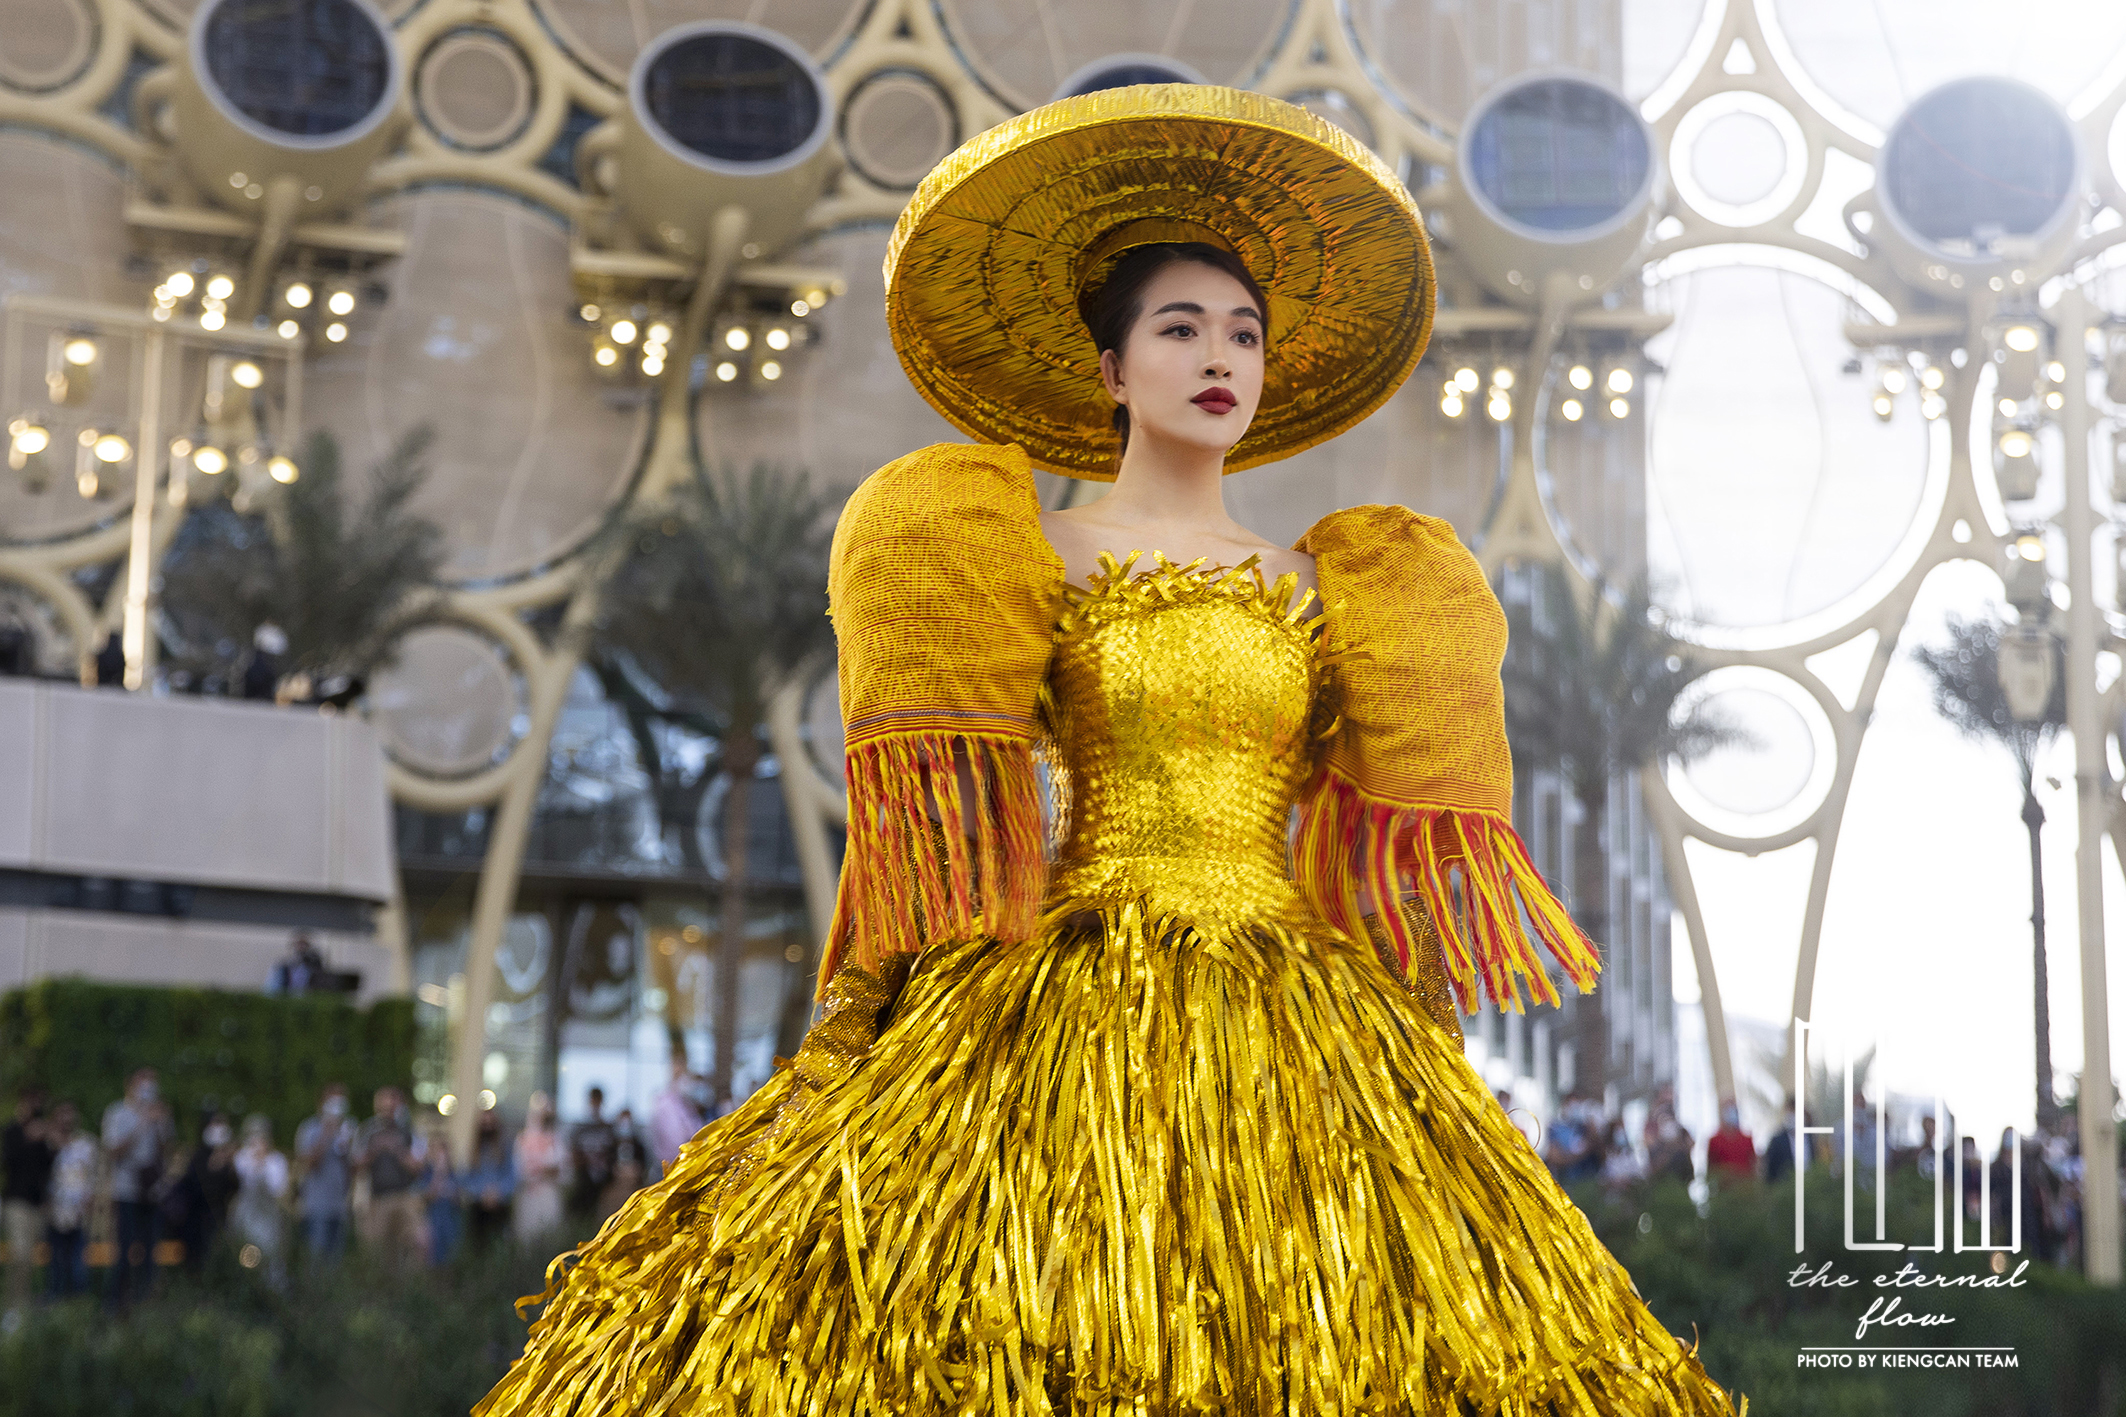 Chiêm ngưỡng những sản phẩm dệt thủ công từ thổ cẩm tại EXPO 2020 Dubai - Ảnh 4.